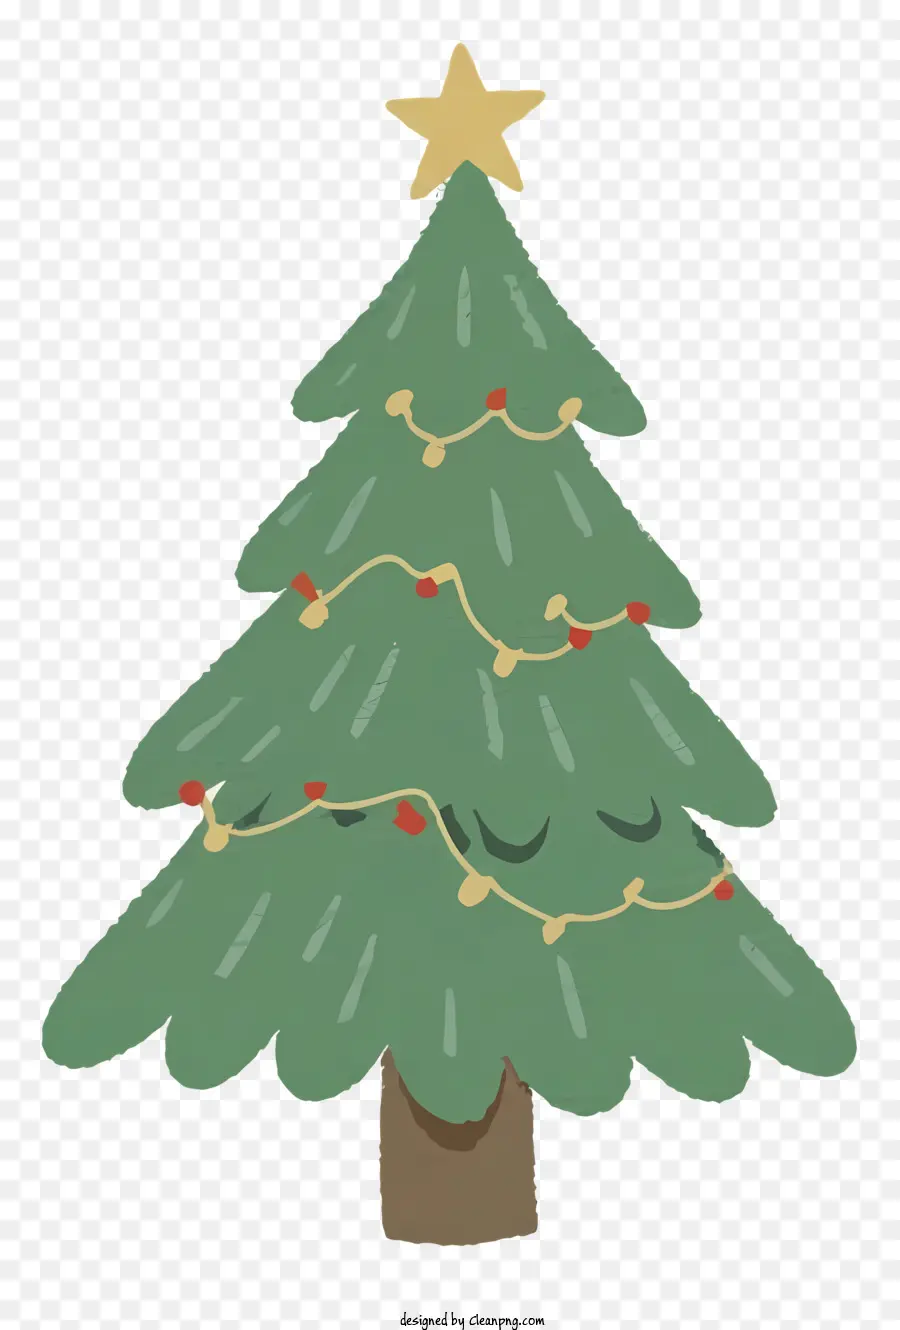 Weihnachtsbaum - Weihnachtsbaum mit Stern, Lichtern und Geschenken